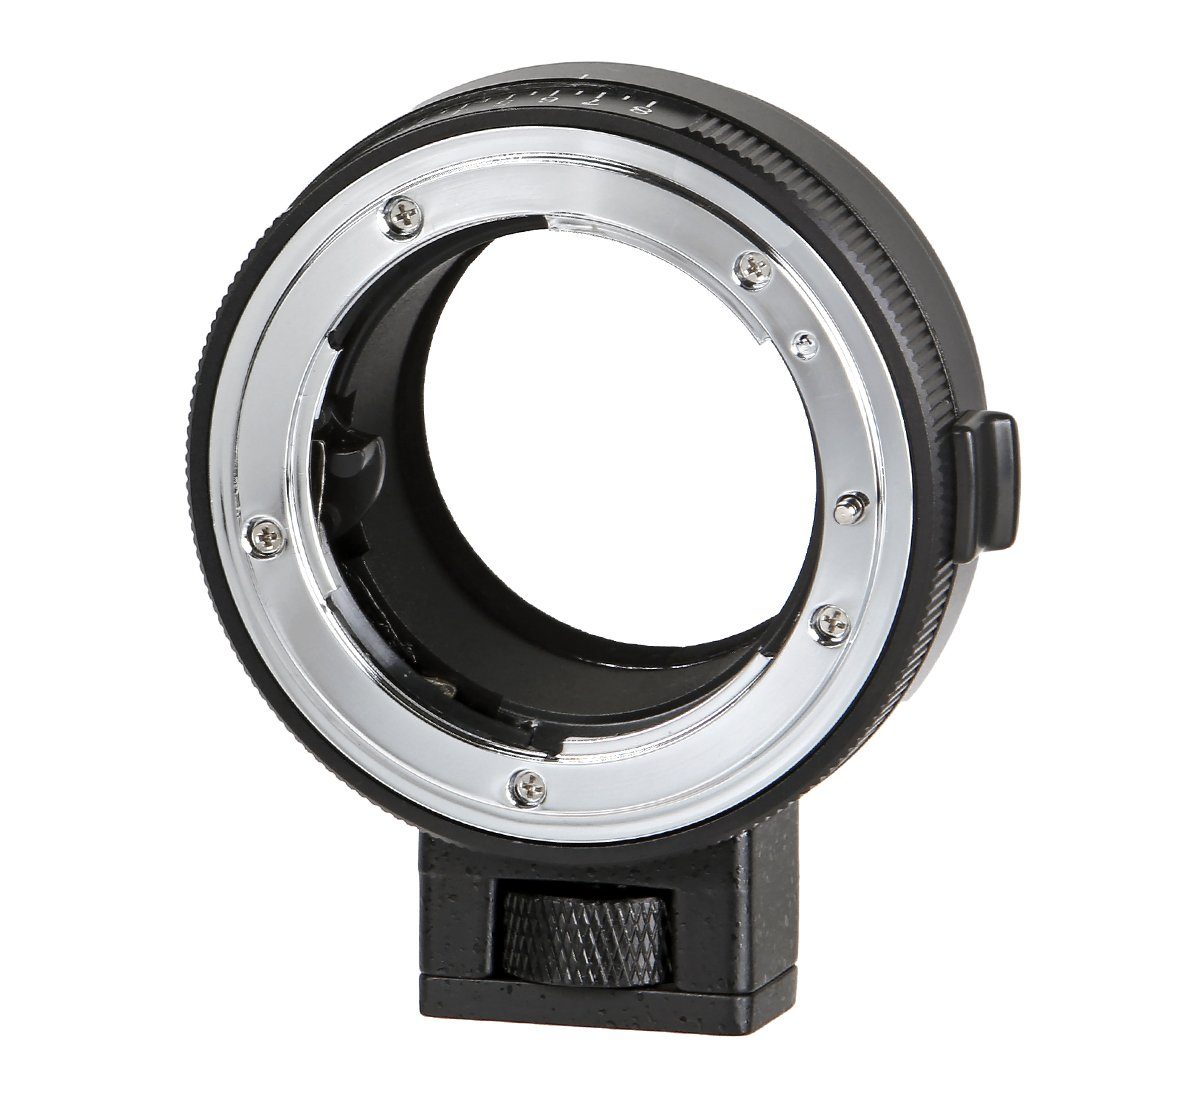 Objektive-Adapter ayex an Nikon Objektiveadapter G Sony E-Mount